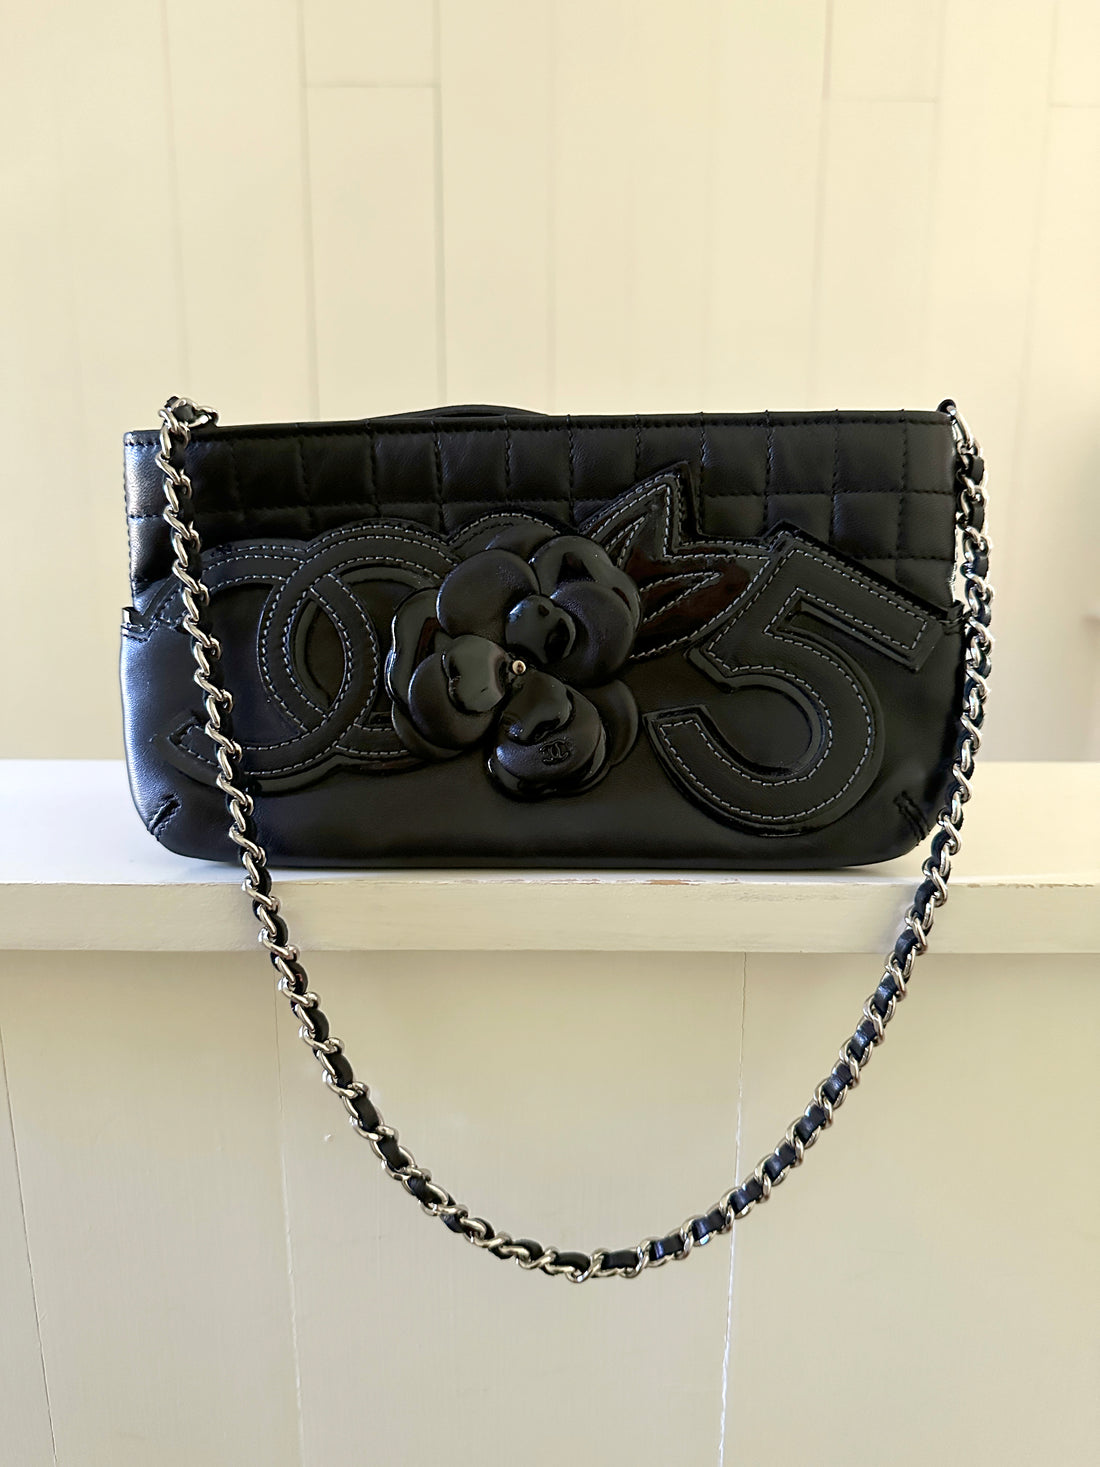 Back in Black – Handbag Social Club